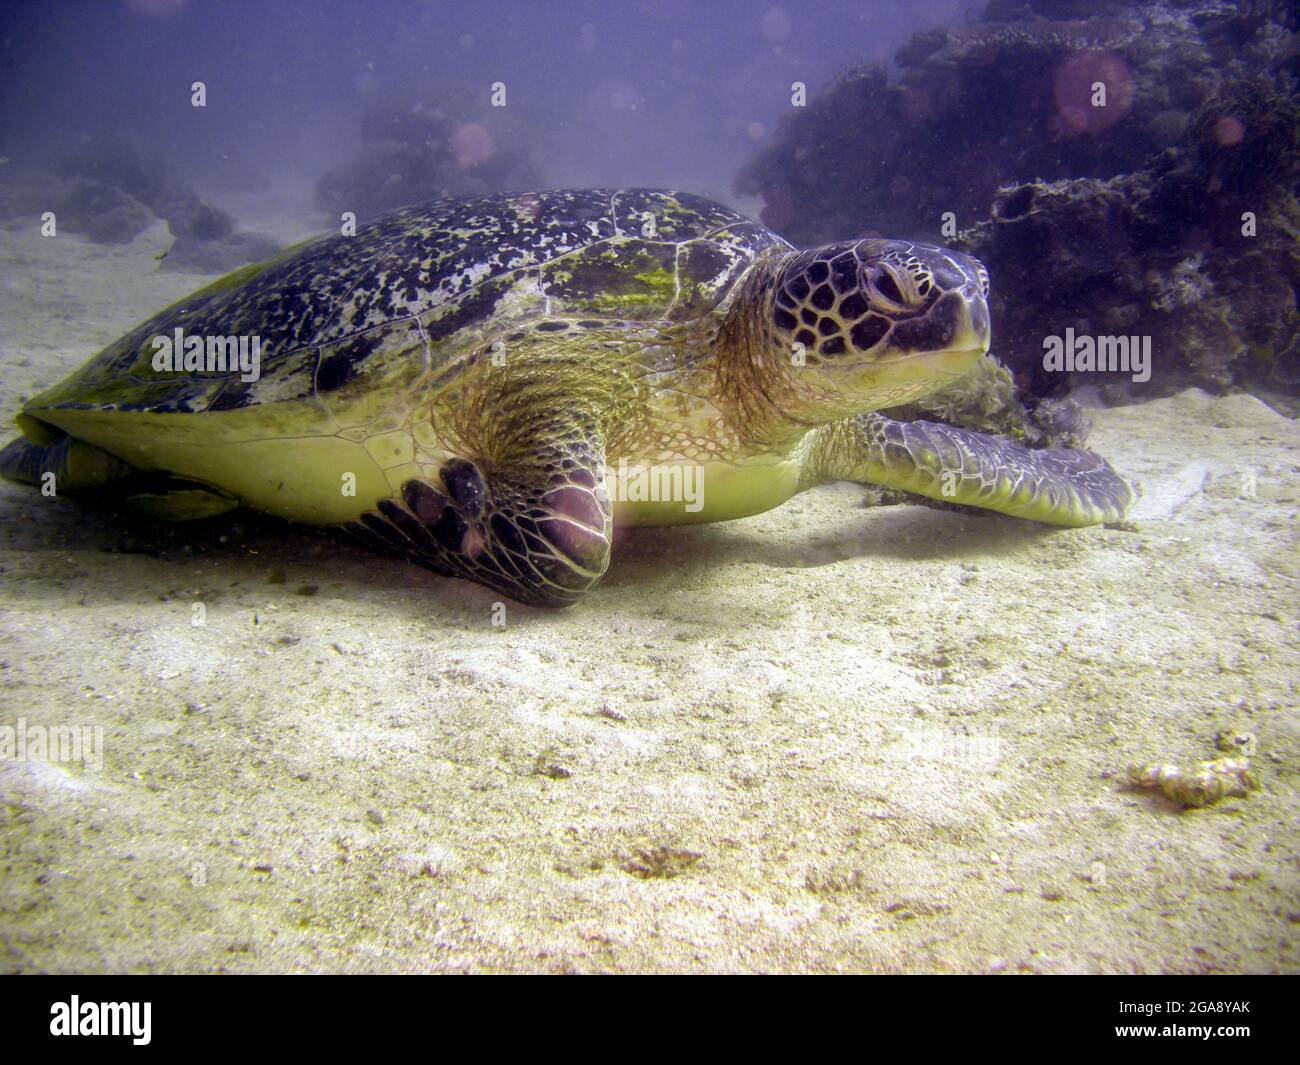 Tortuga marina Cheloniidae está buceando en el mar filipino 2.2.2018 Foto de stock